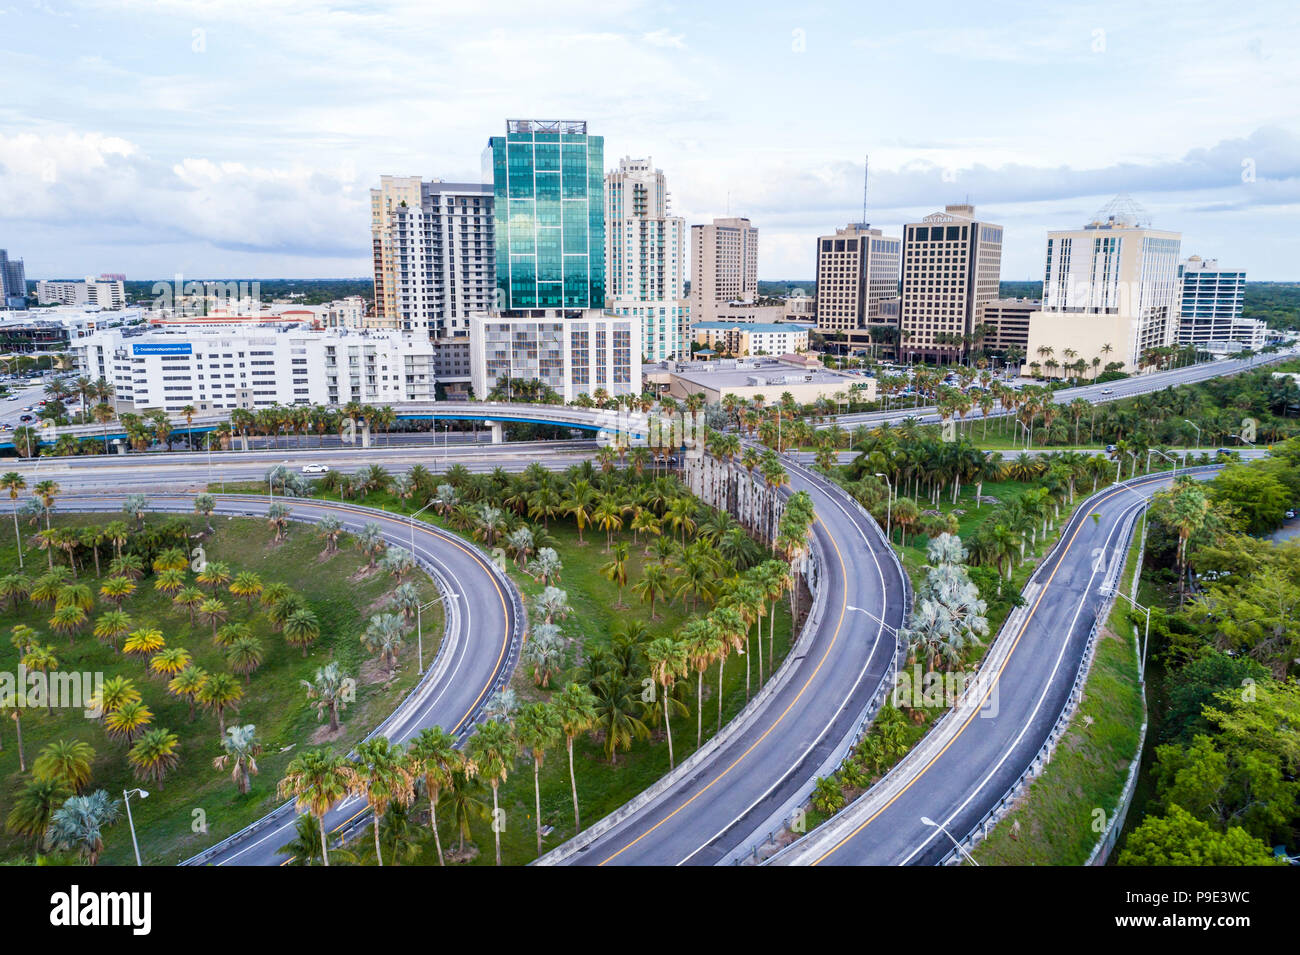 Miami Florida, centre-ville un à Dadeland, Palmetto Expressway, autoroute, sortie d'entrée, horizon de la ville, immeubles de bureaux, appartements résidentiels, aer Banque D'Images